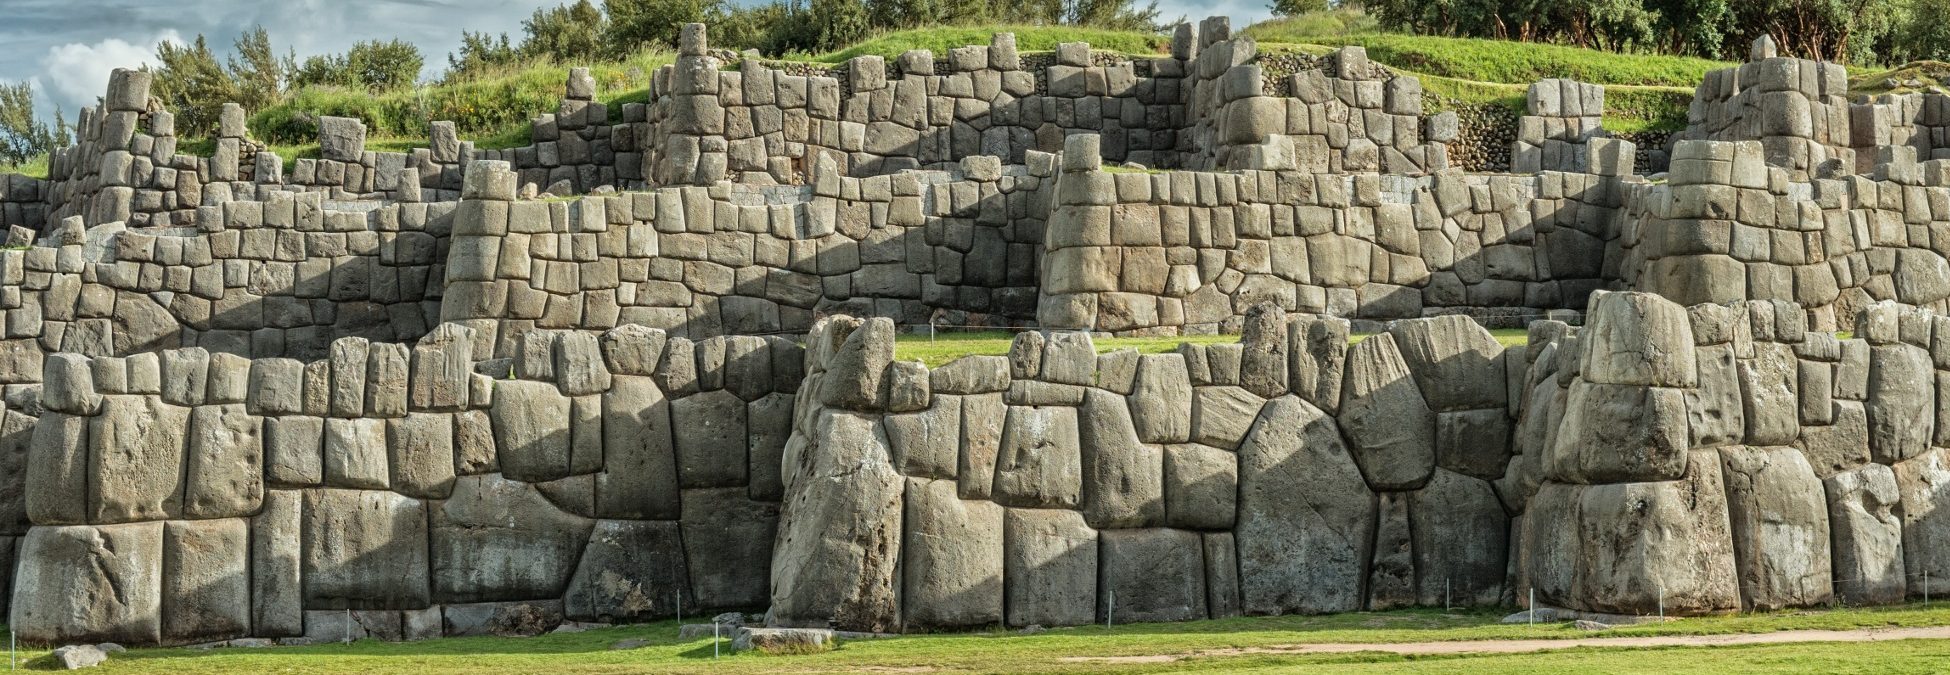 Megalithic Walls At Sacsayhuaman, Perù